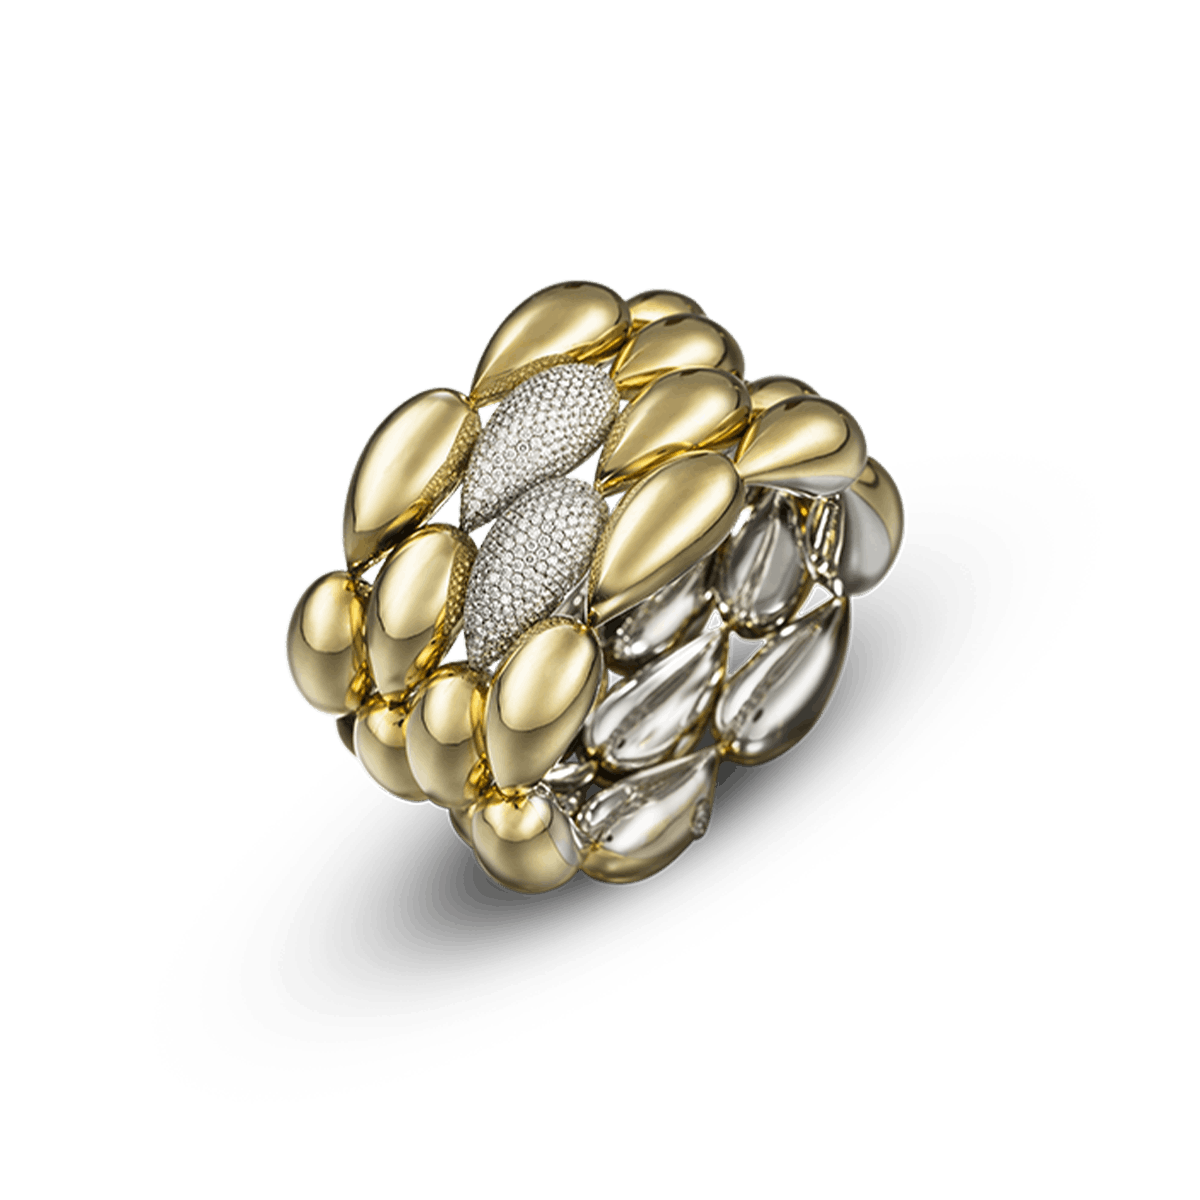 18k White Gold and 18k Yellow Gold Bracelets Diamond - Nuts pavé